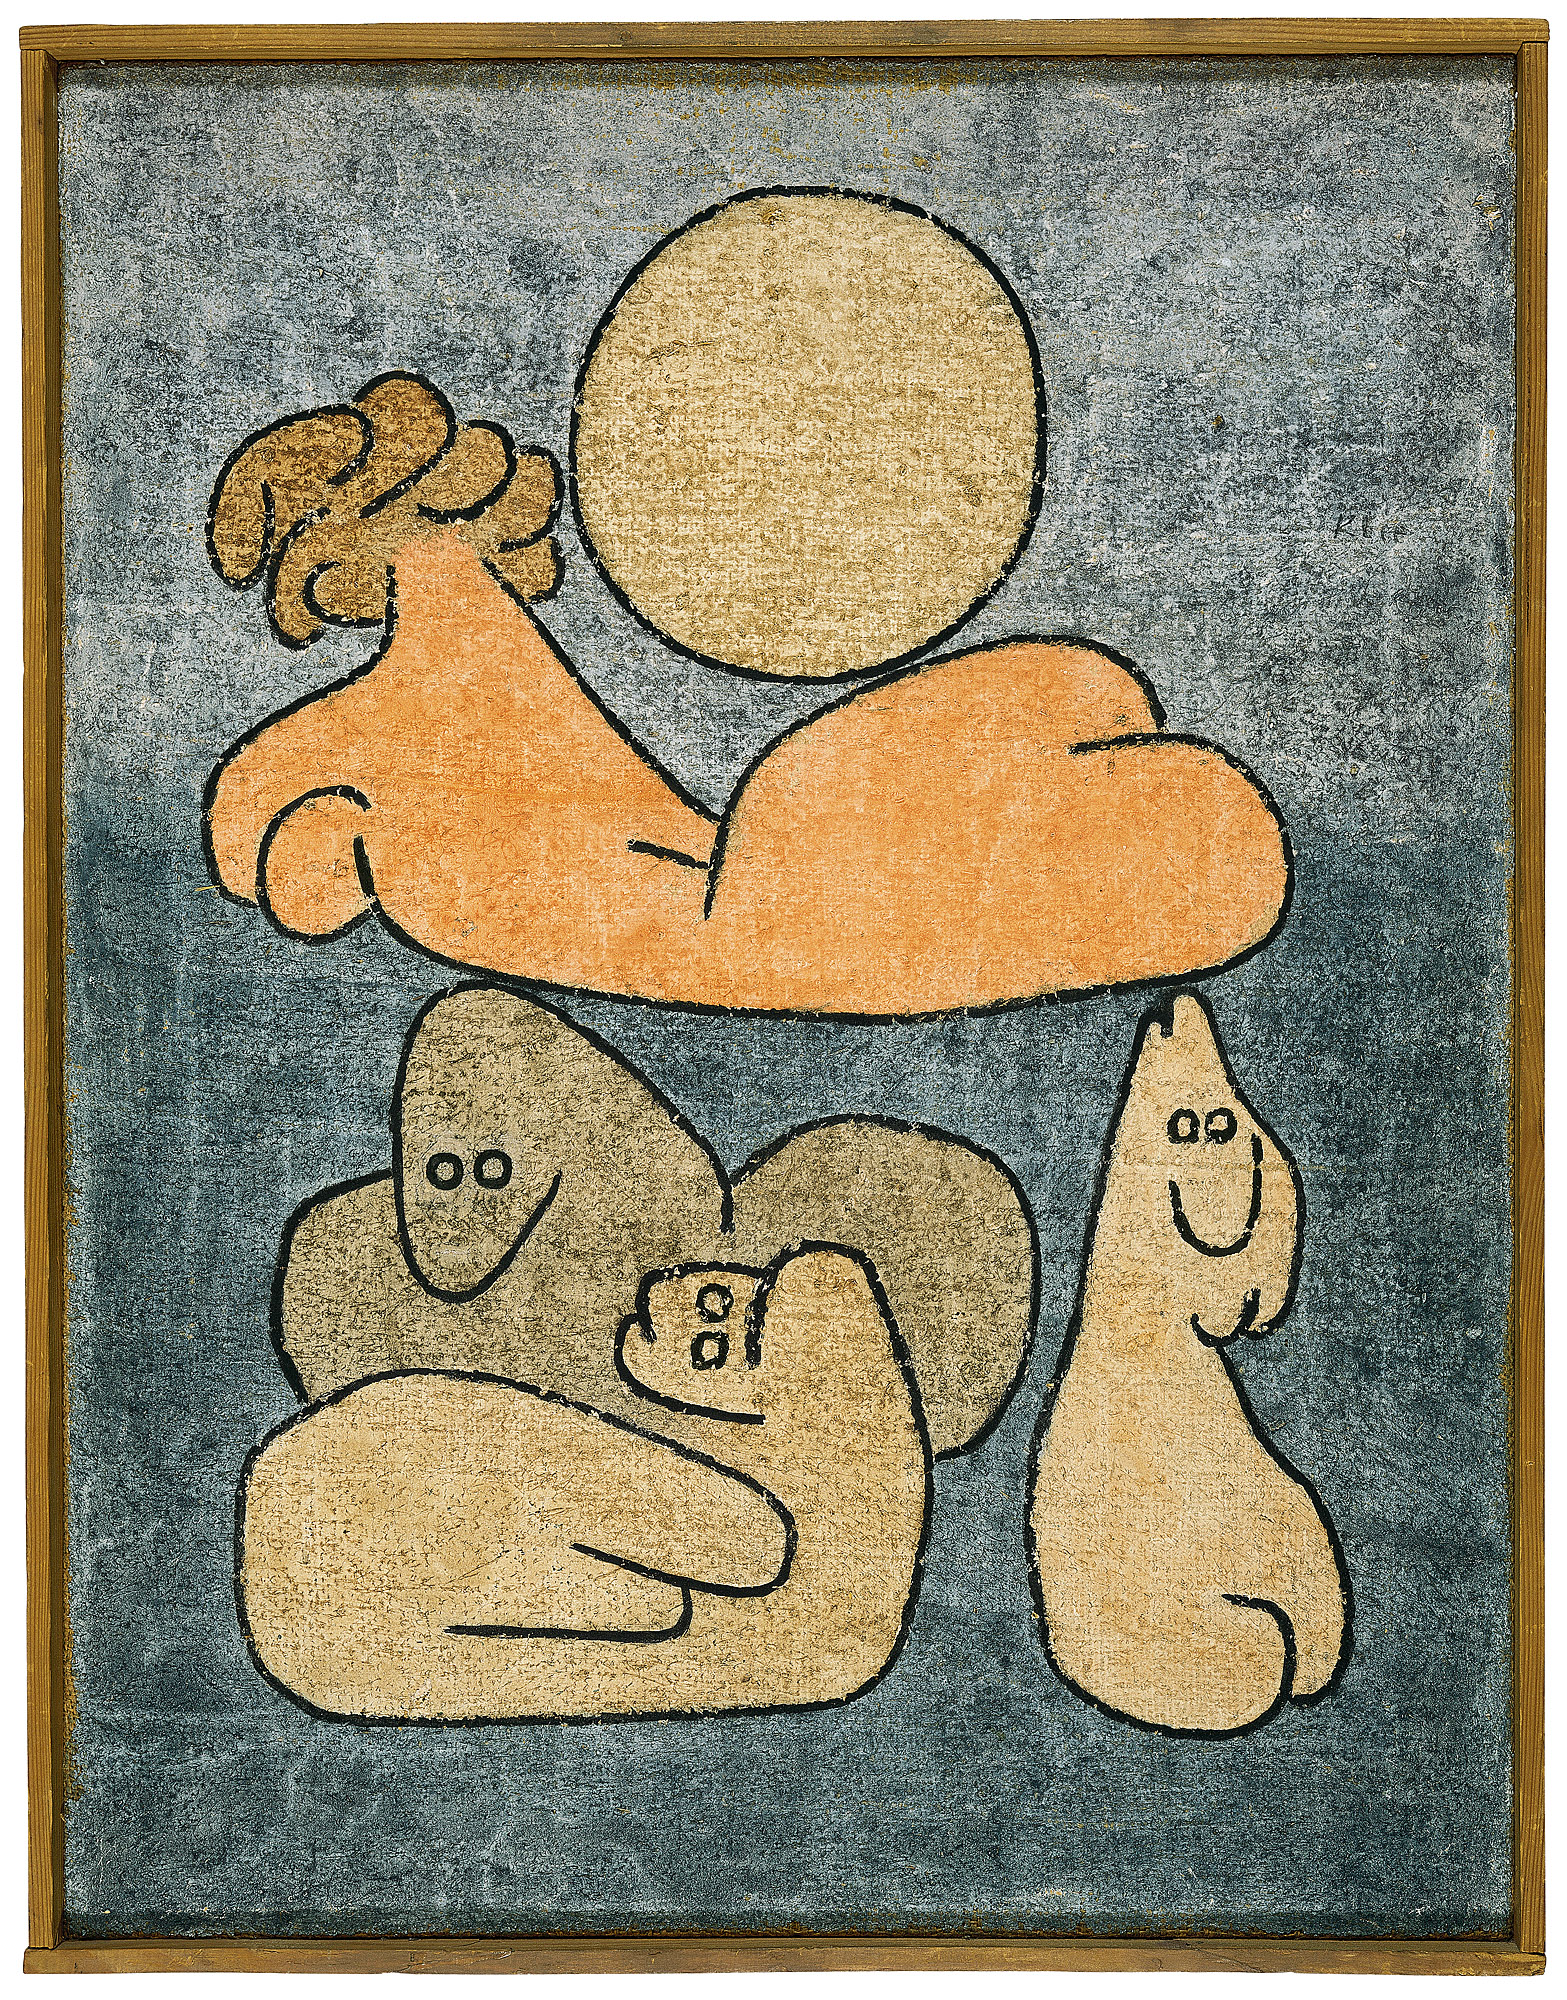 پیکره و خانواده (در ماه کامل) by Paul Klee - 1939 میلادی - 65 x 50 سانتی متر 